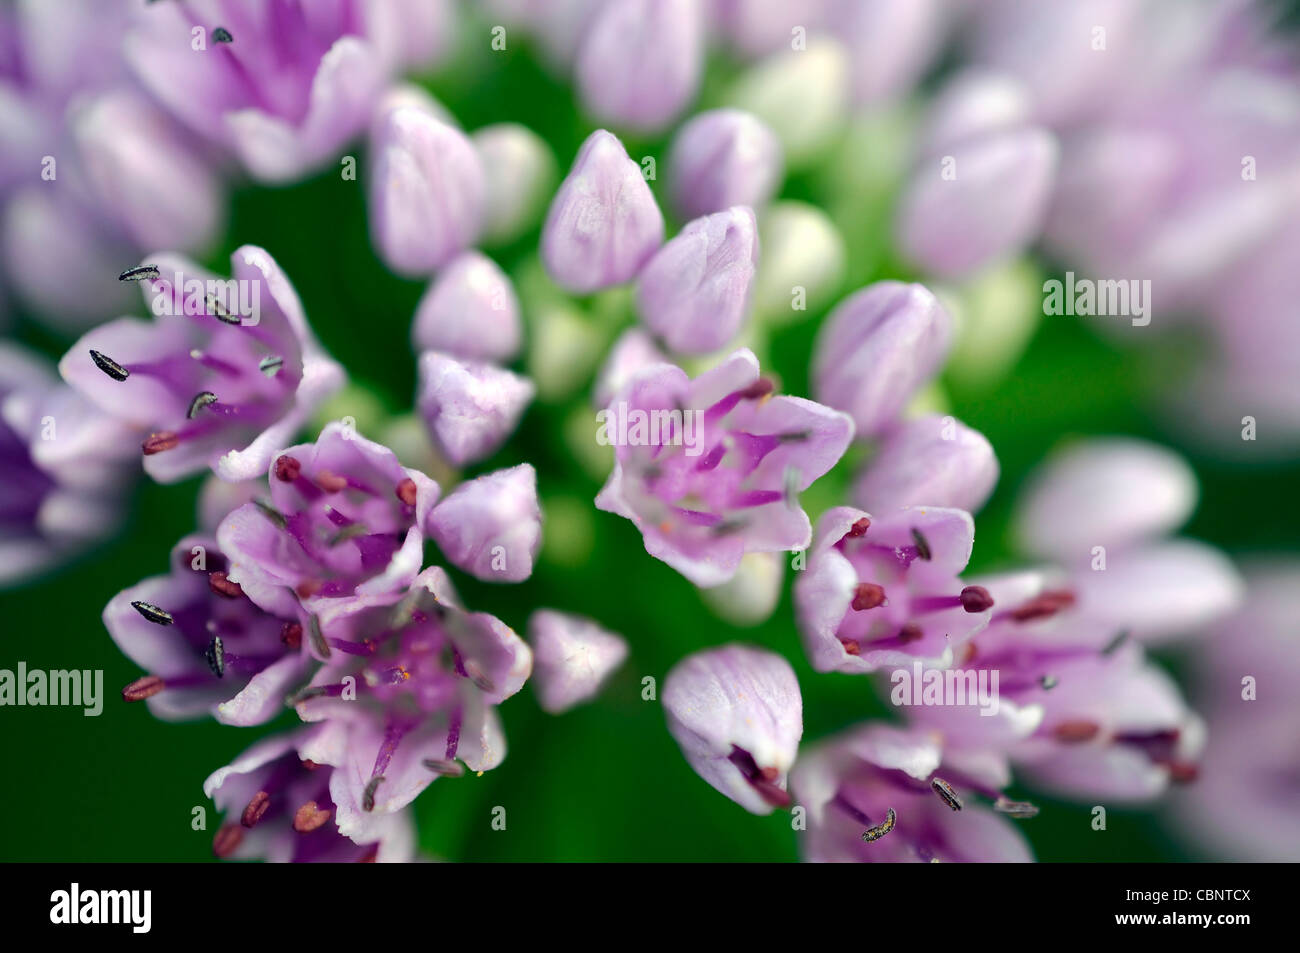 Allium angulosum closeup messa a fuoco selettiva dei ritratti di piante fiori fioritura fiorisce a fiori viola chiaro pastello cipolle ornamentali Foto Stock